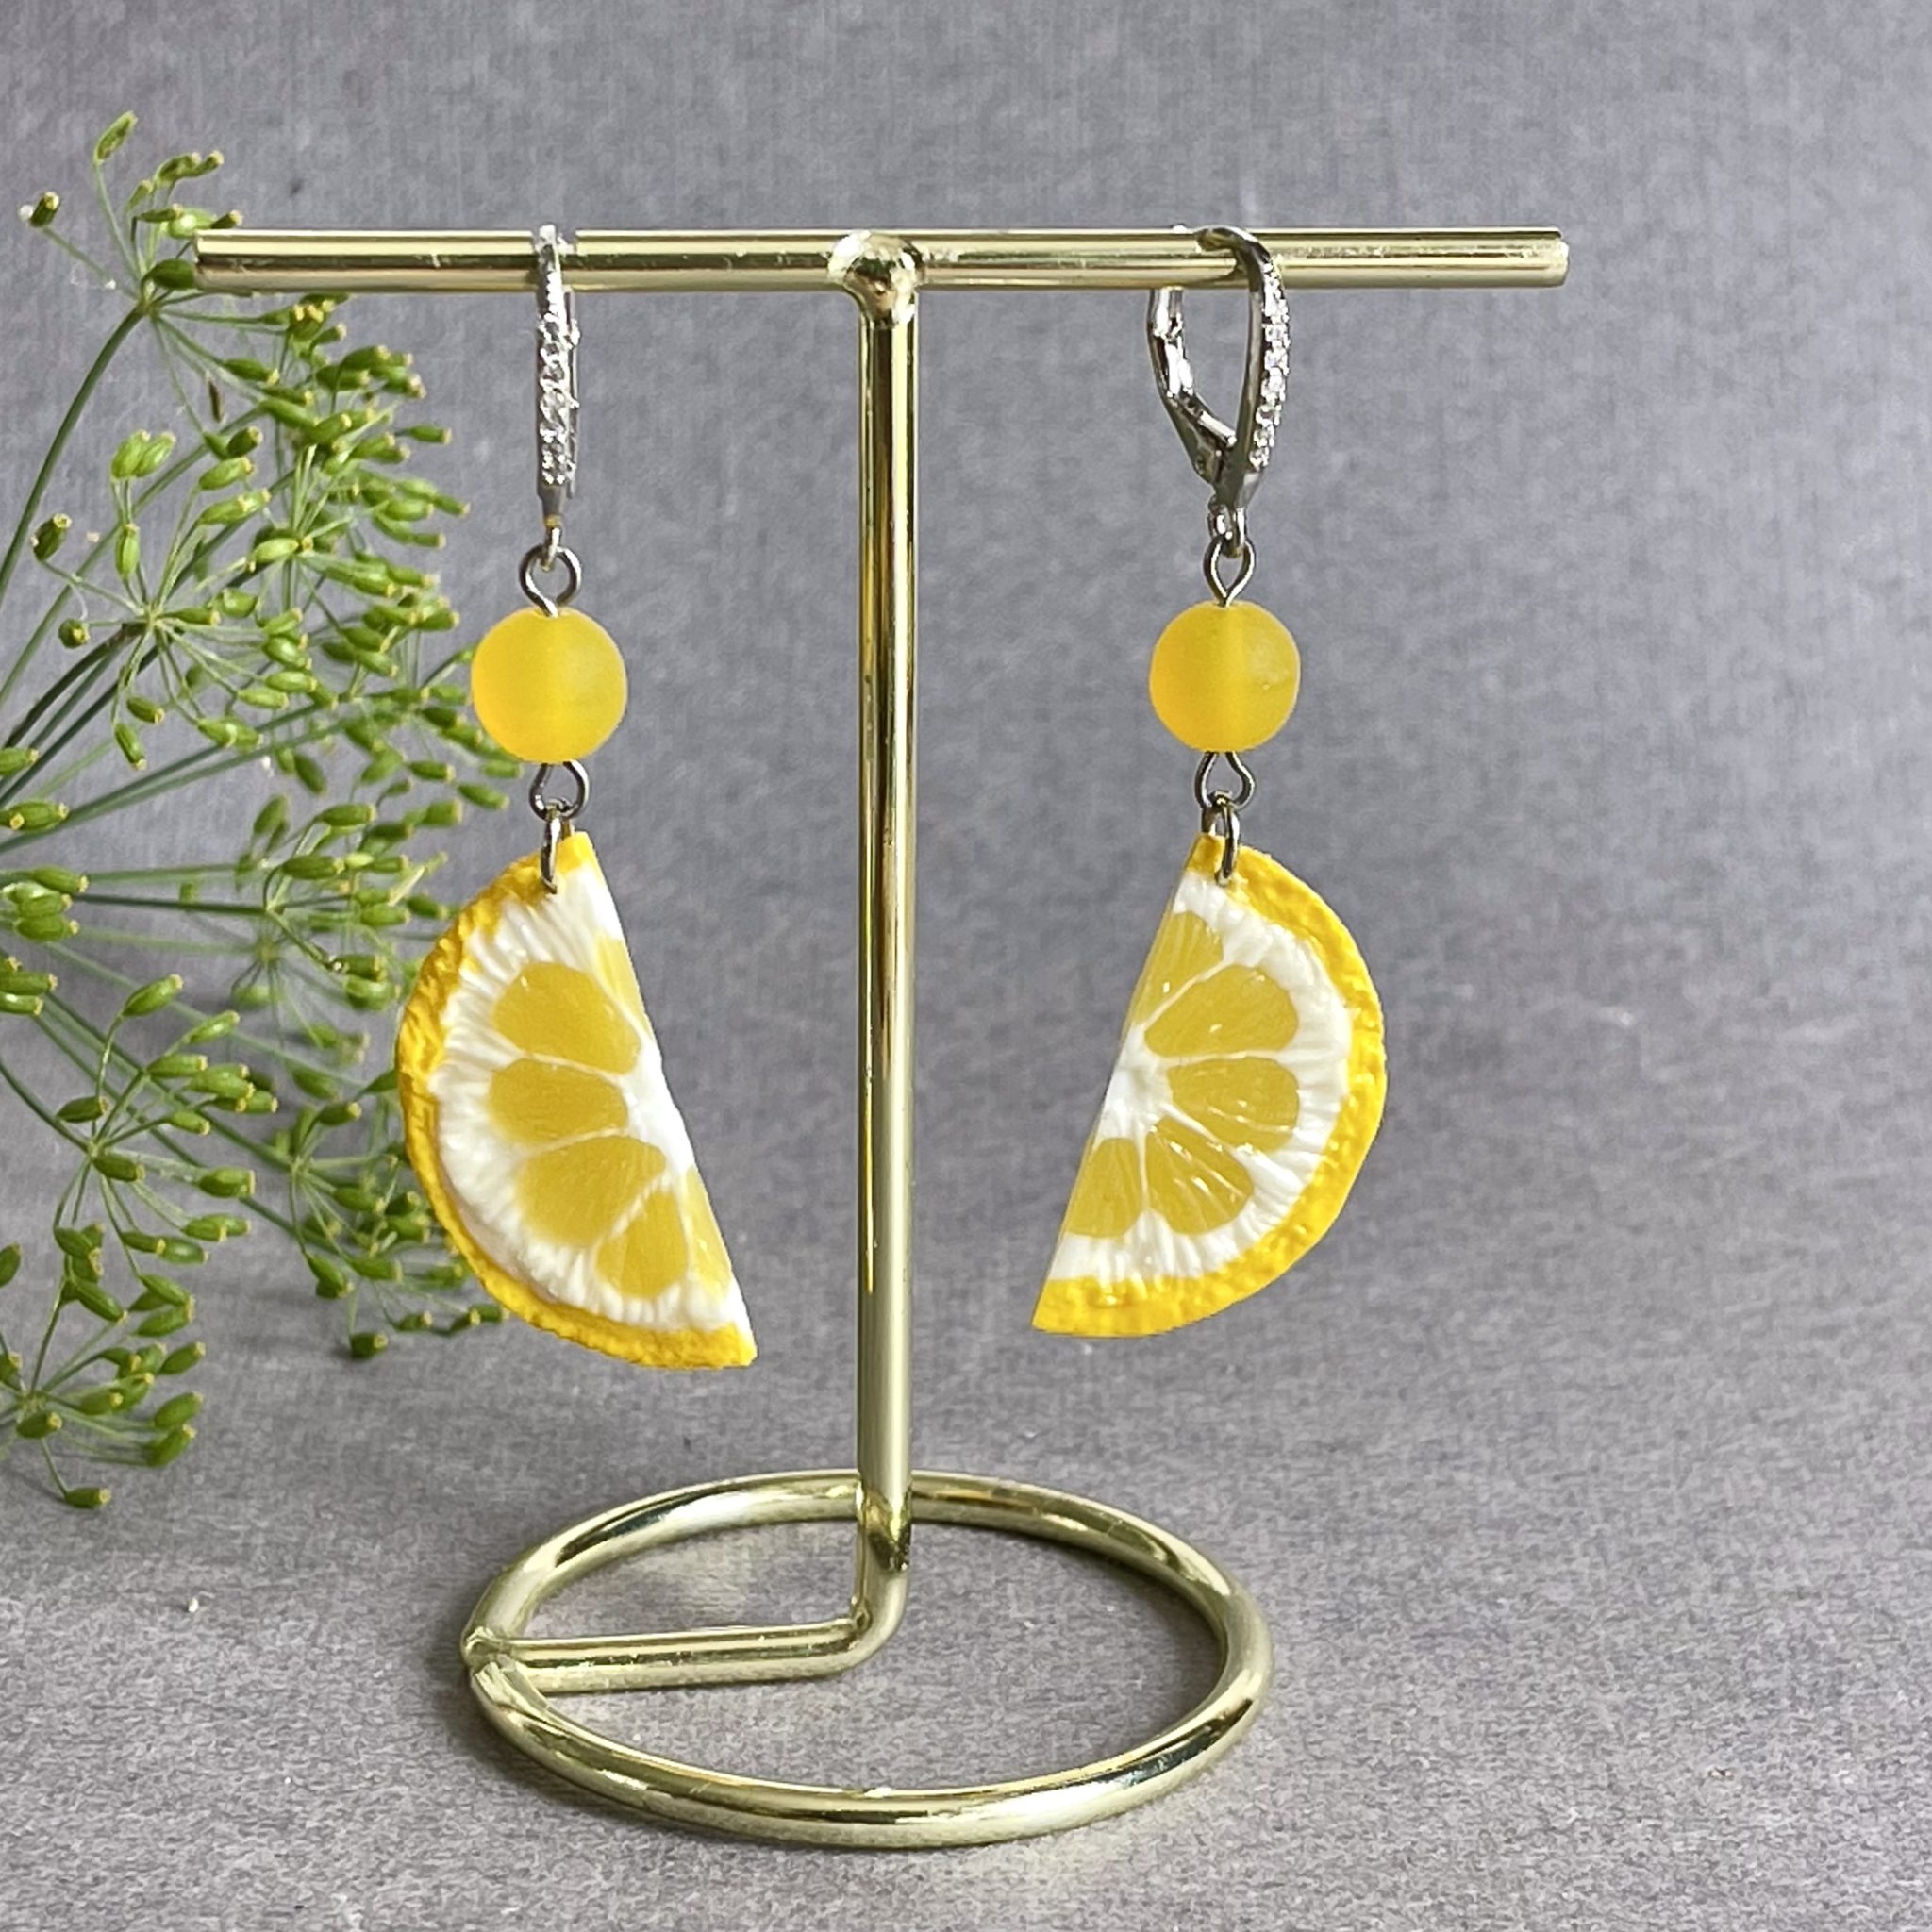 Lemon earrings, lemon slice earrings, citrus dangle jewelry, funny jewelry, lemon slice jewelry, Fruit earrings, Lemon Statement jewelry